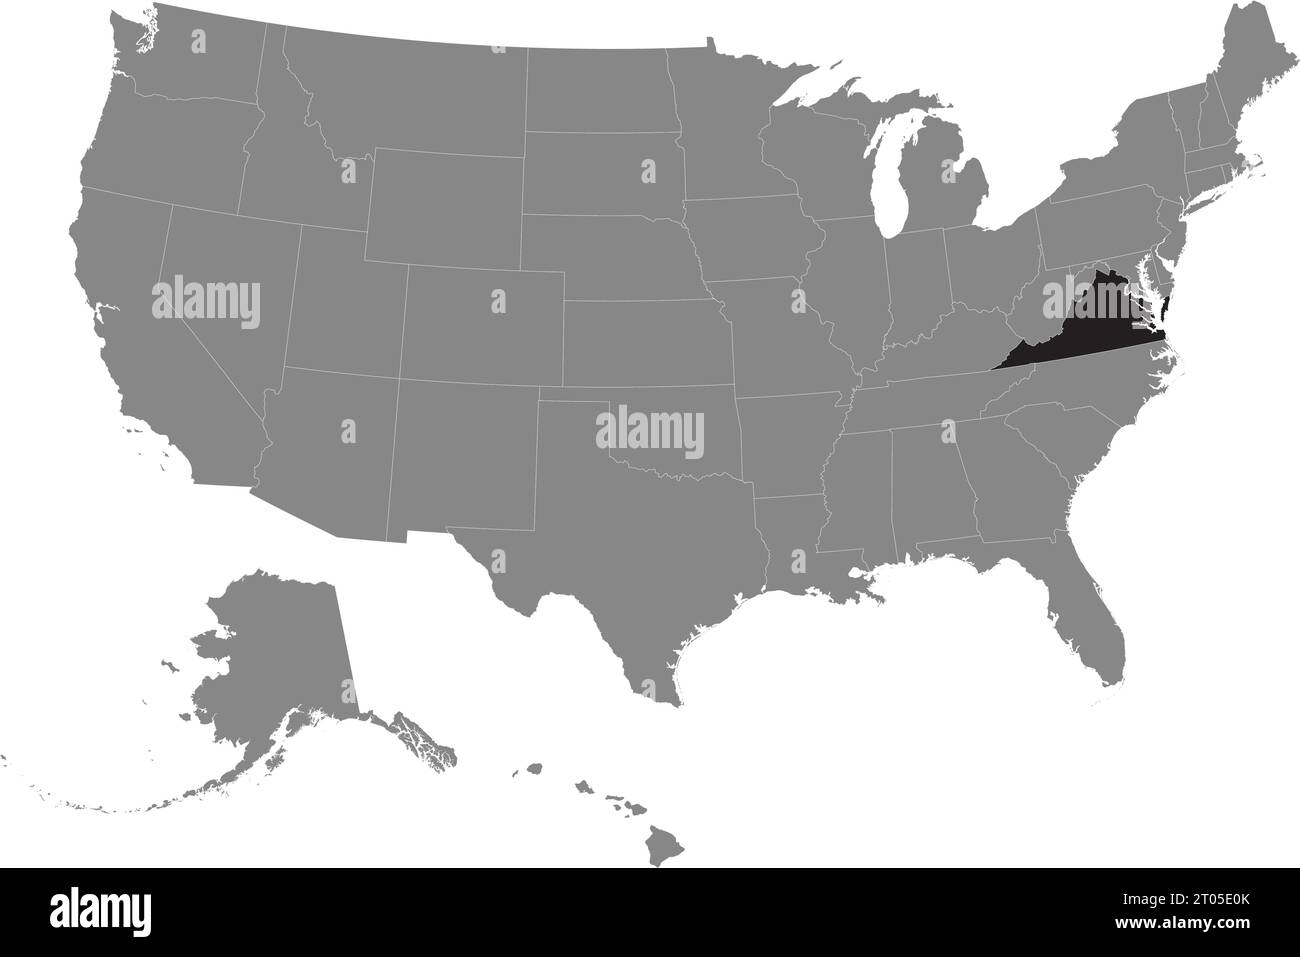 Schwarze CMYK-Bundeskarte von VIRGINIA in detaillierter grauer, leerer politischer Karte der Vereinigten Staaten von Amerika auf transparentem Hintergrund Stock Vektor